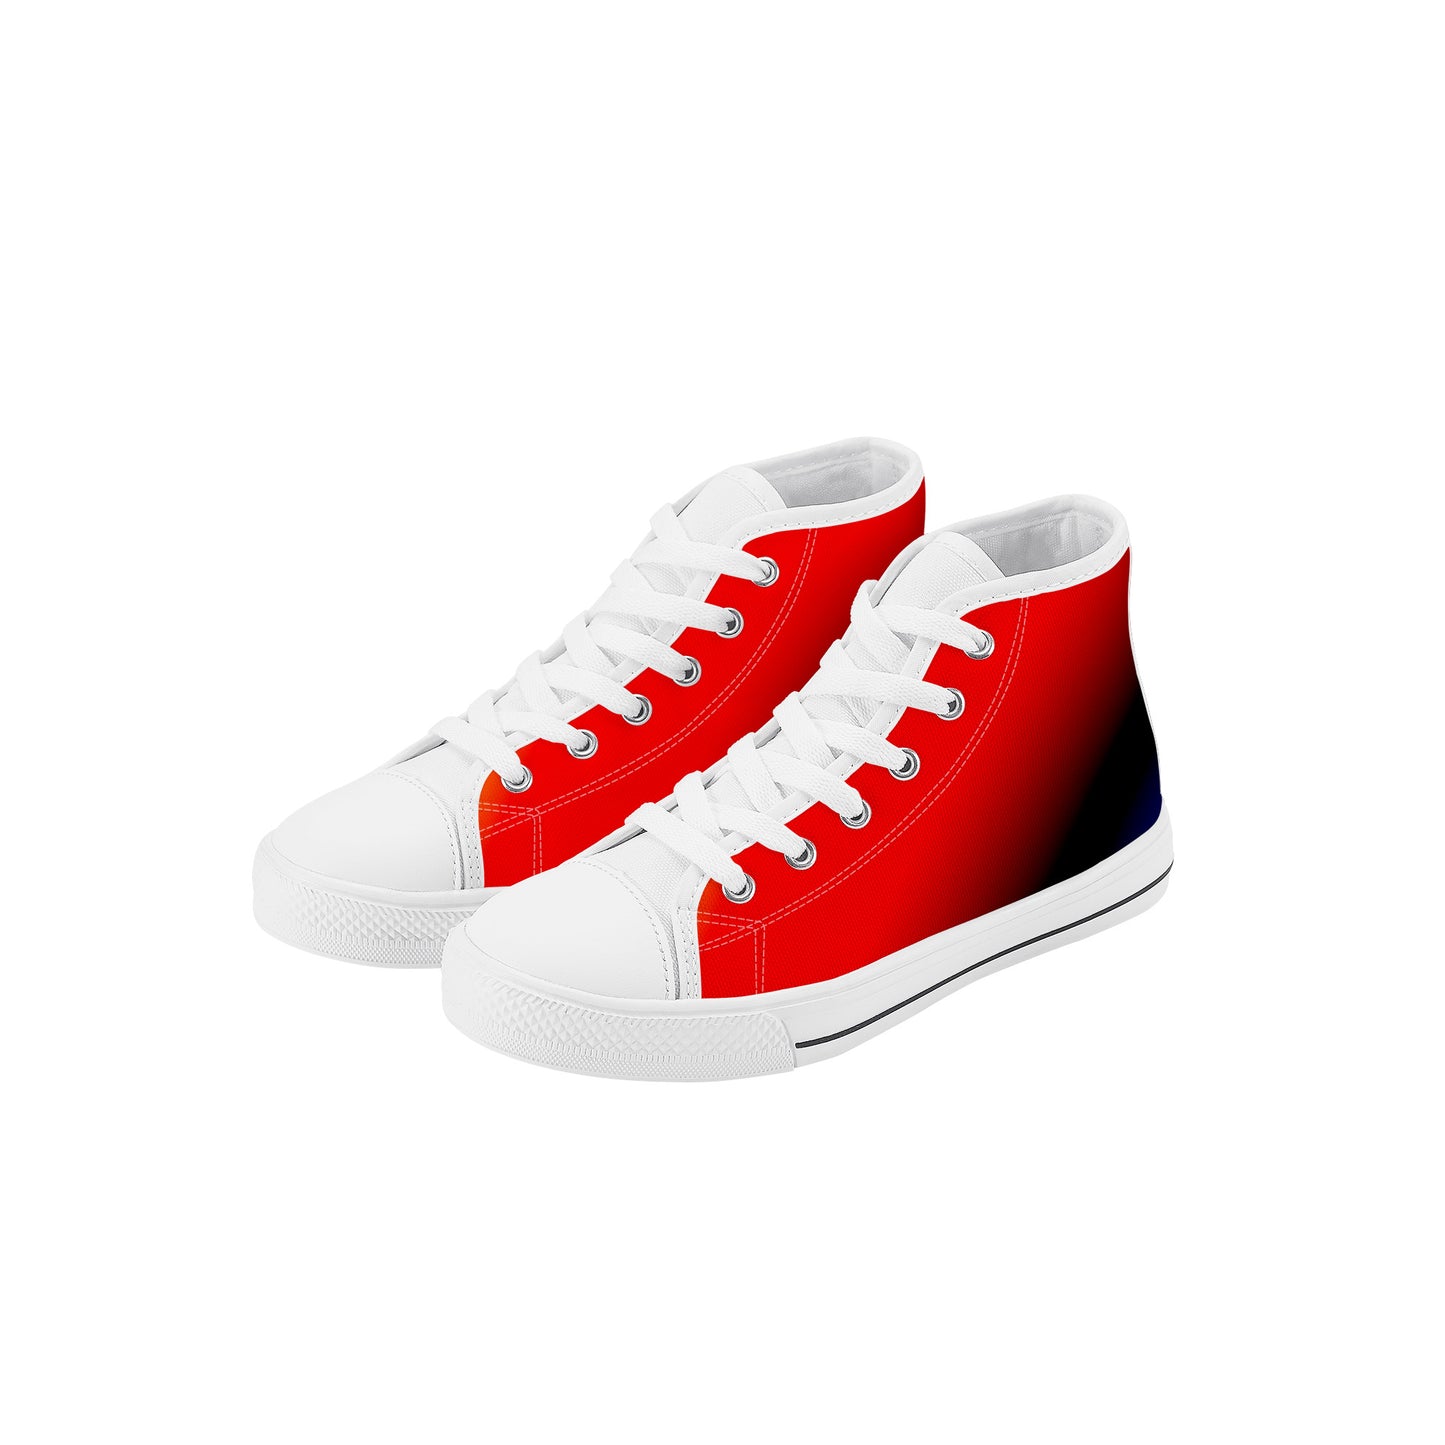 Kids High Top Sneakers - Red/Orange